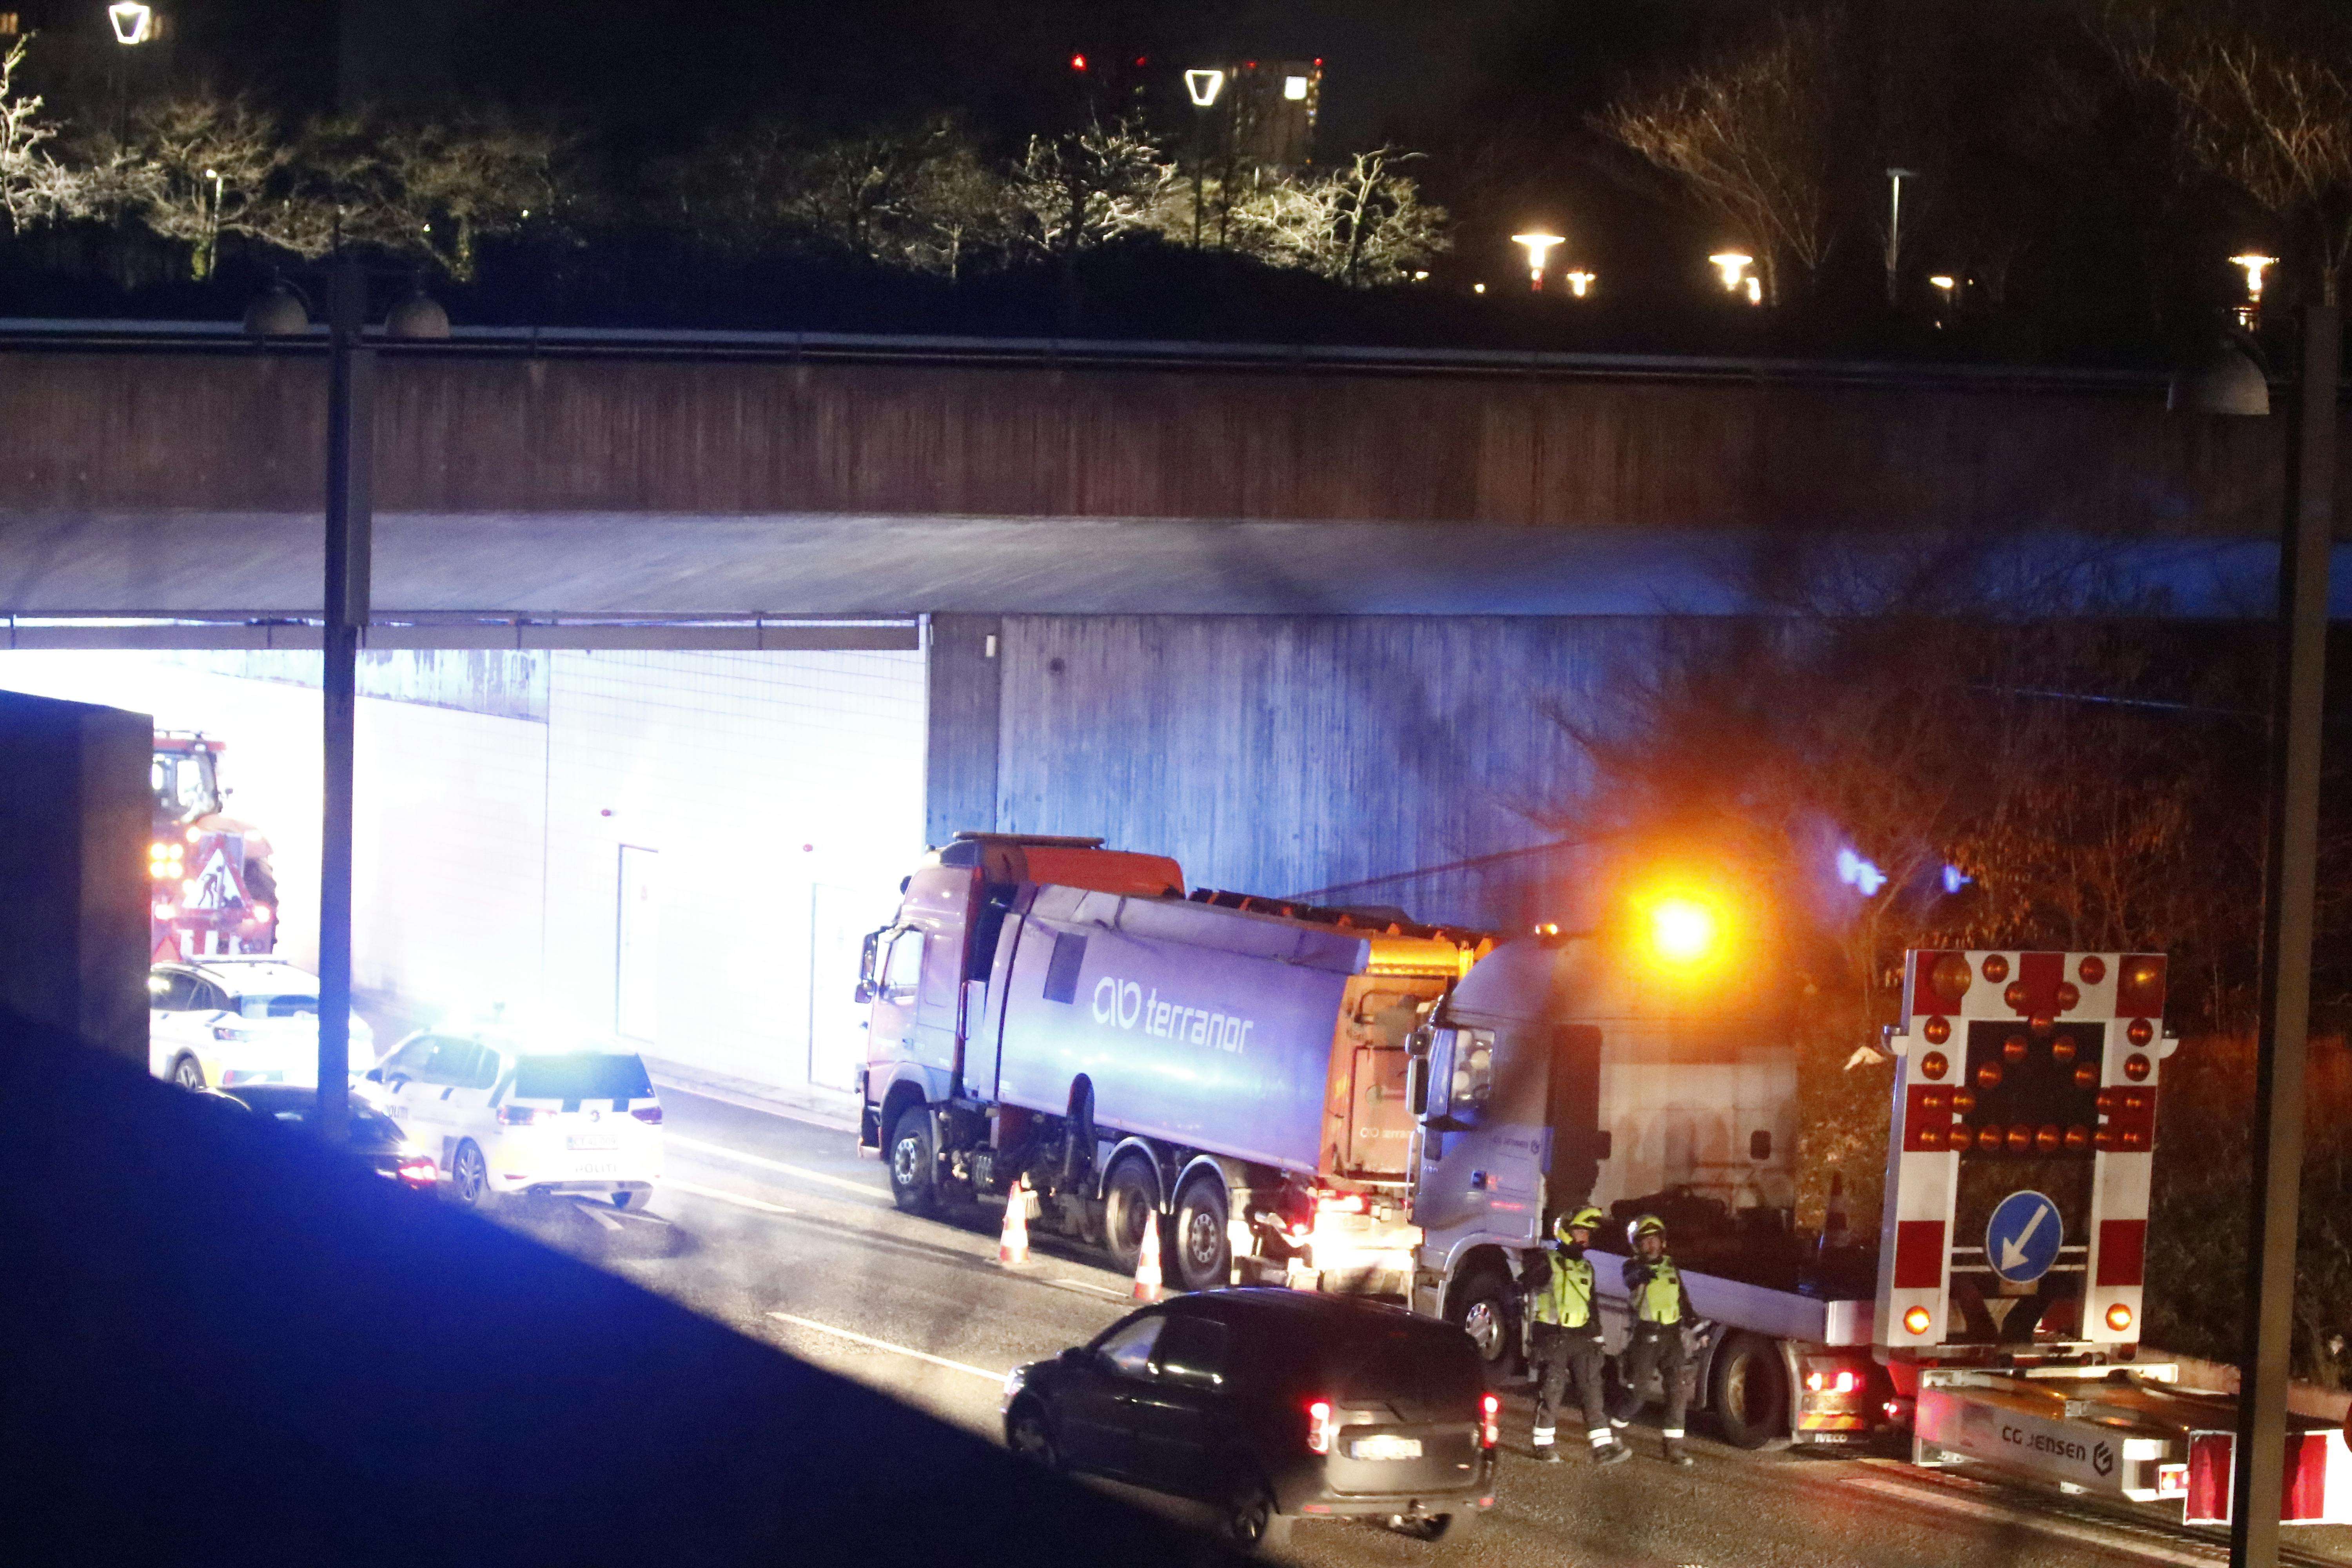 Der er sket et alvorligt trafikuheld på Øresundsmotorvejen onsdag aften. En mand har mistet livet. 